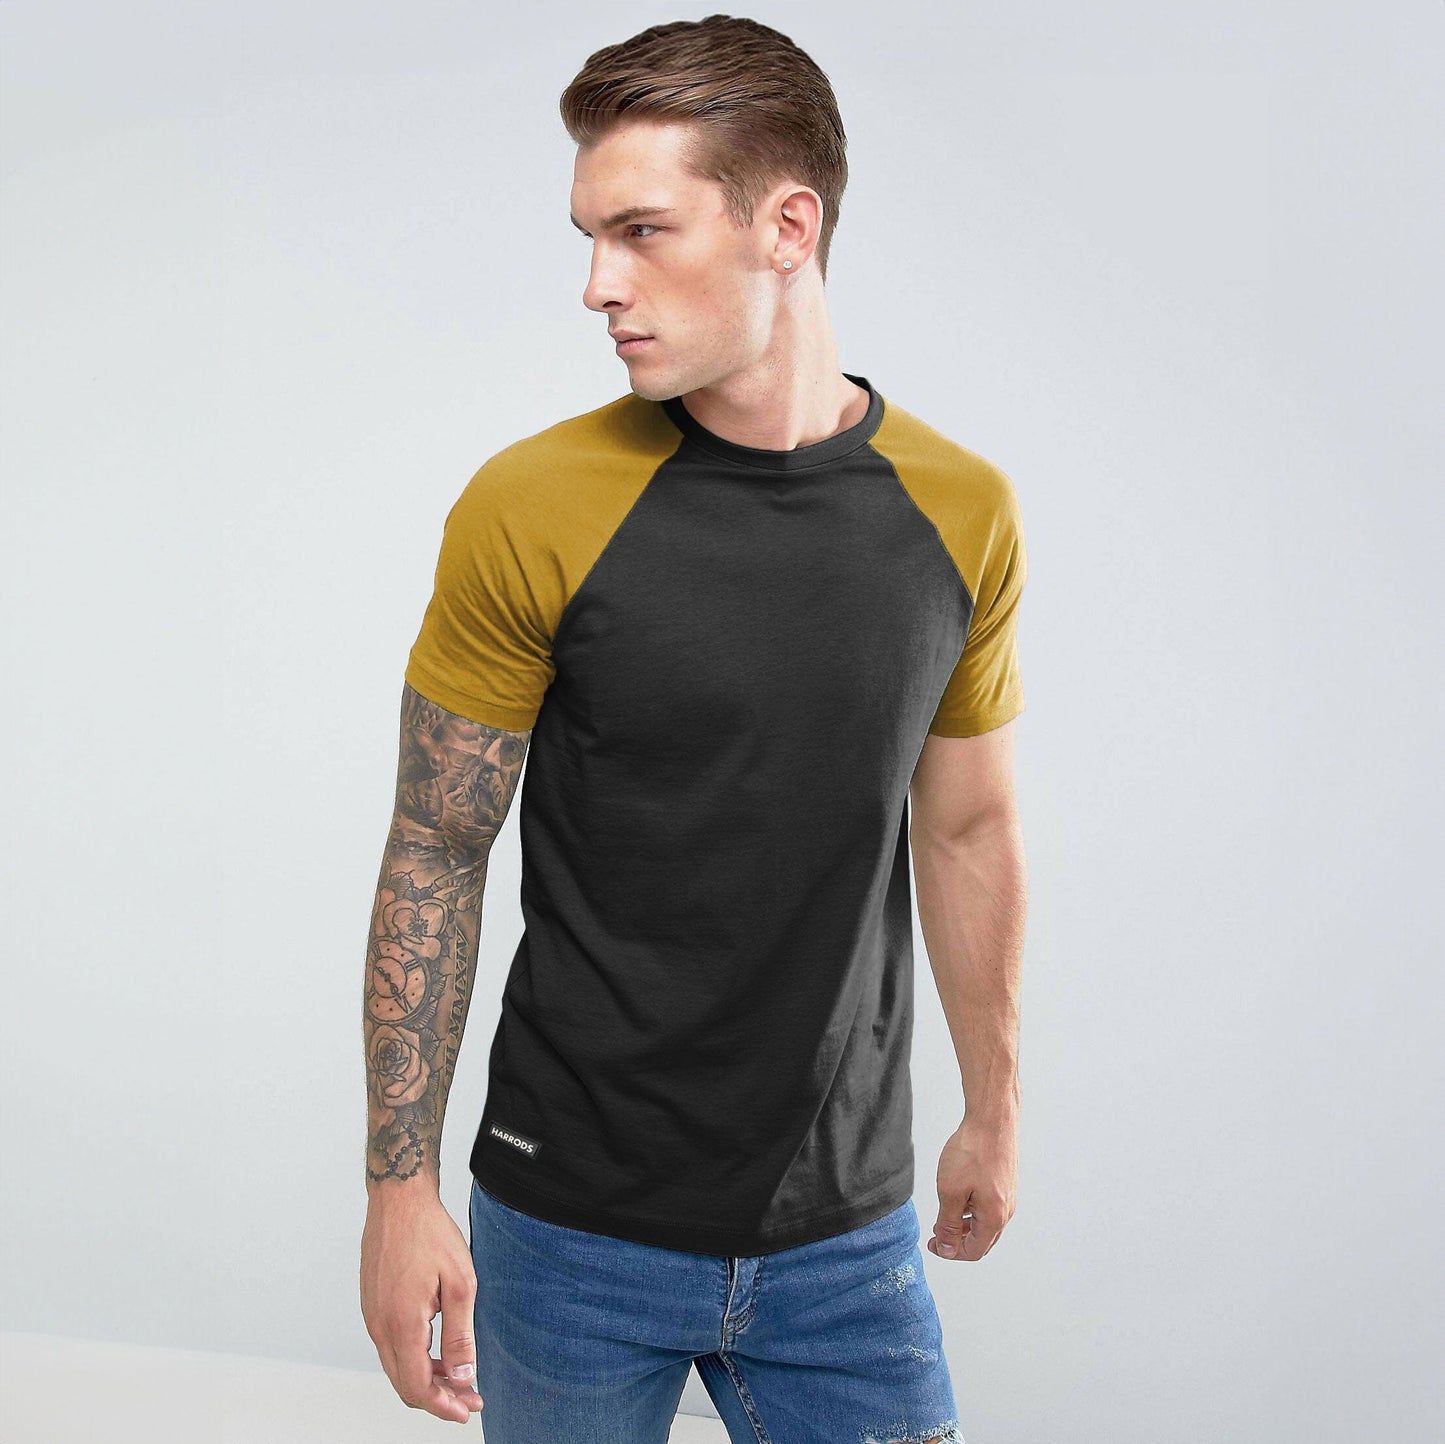 Harrods Men's Contrast Sleeve Style Minor Fault Crew Neck Tee Shirt